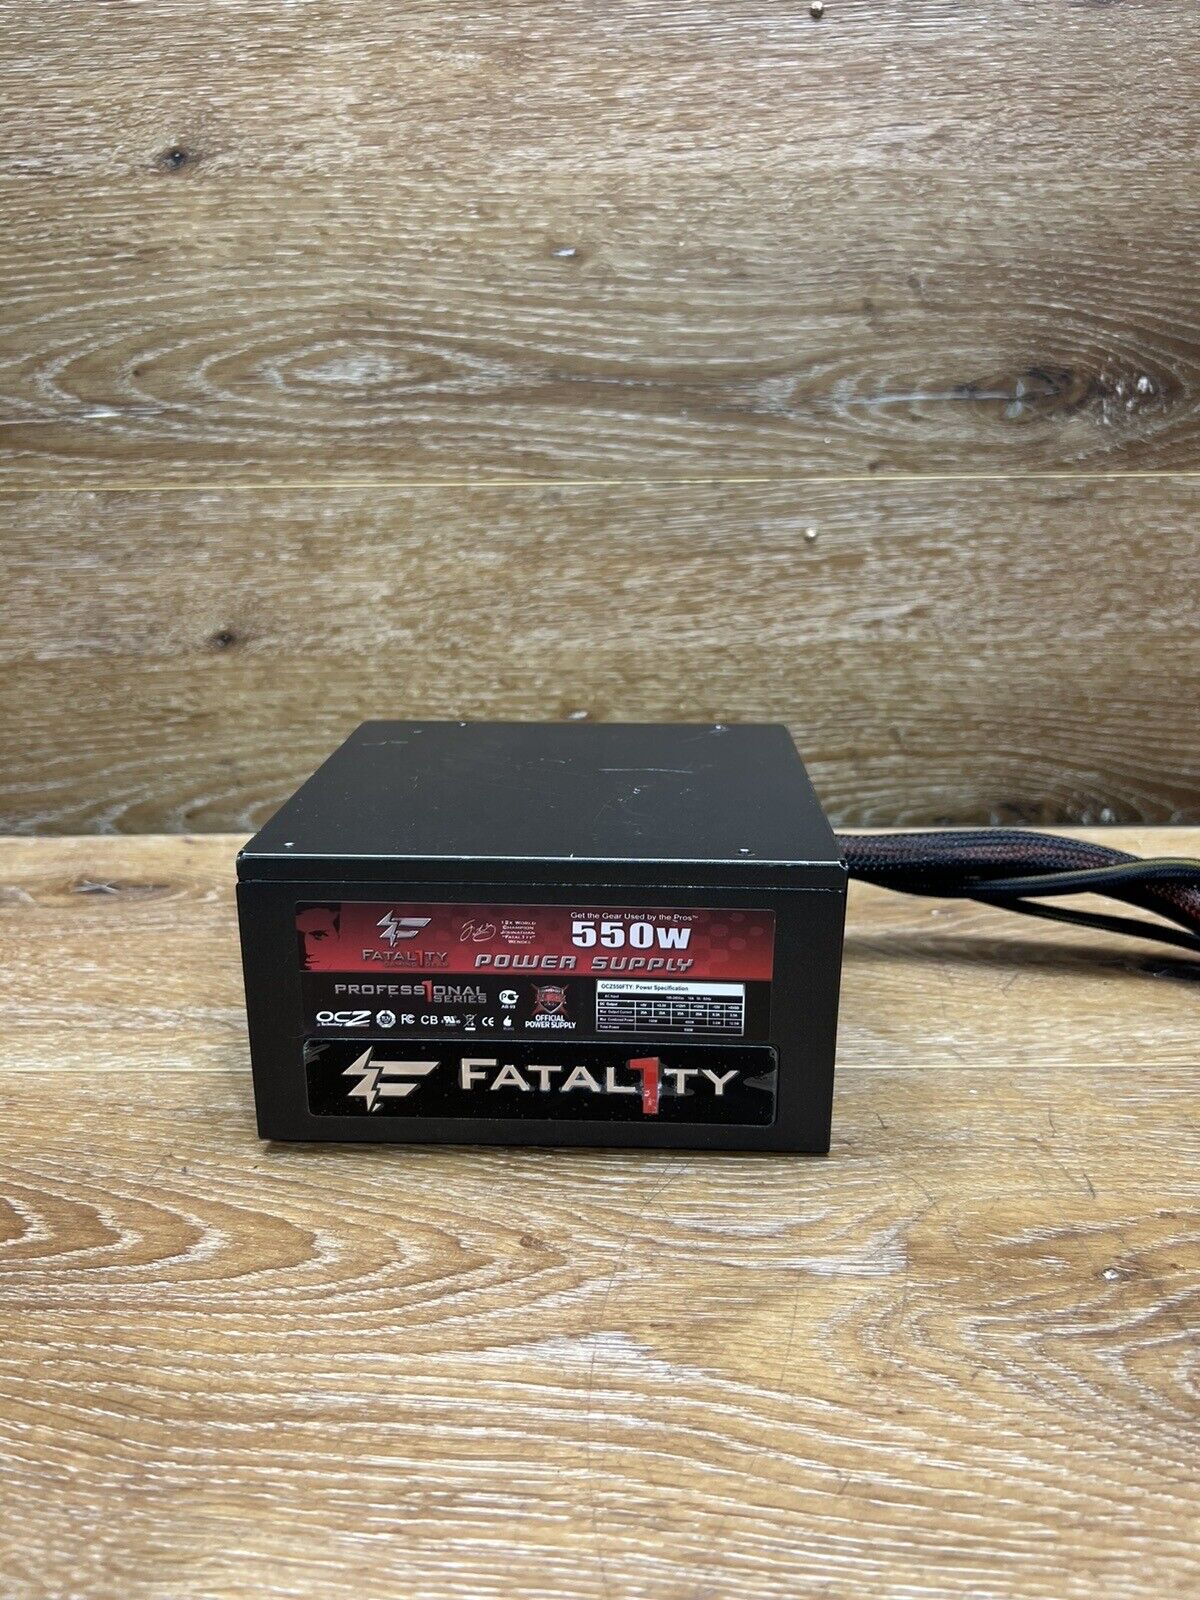 OCZ Fatal1ty 550W ATX Power Supply Semi-Modular Fatality OCZ-FTY550W